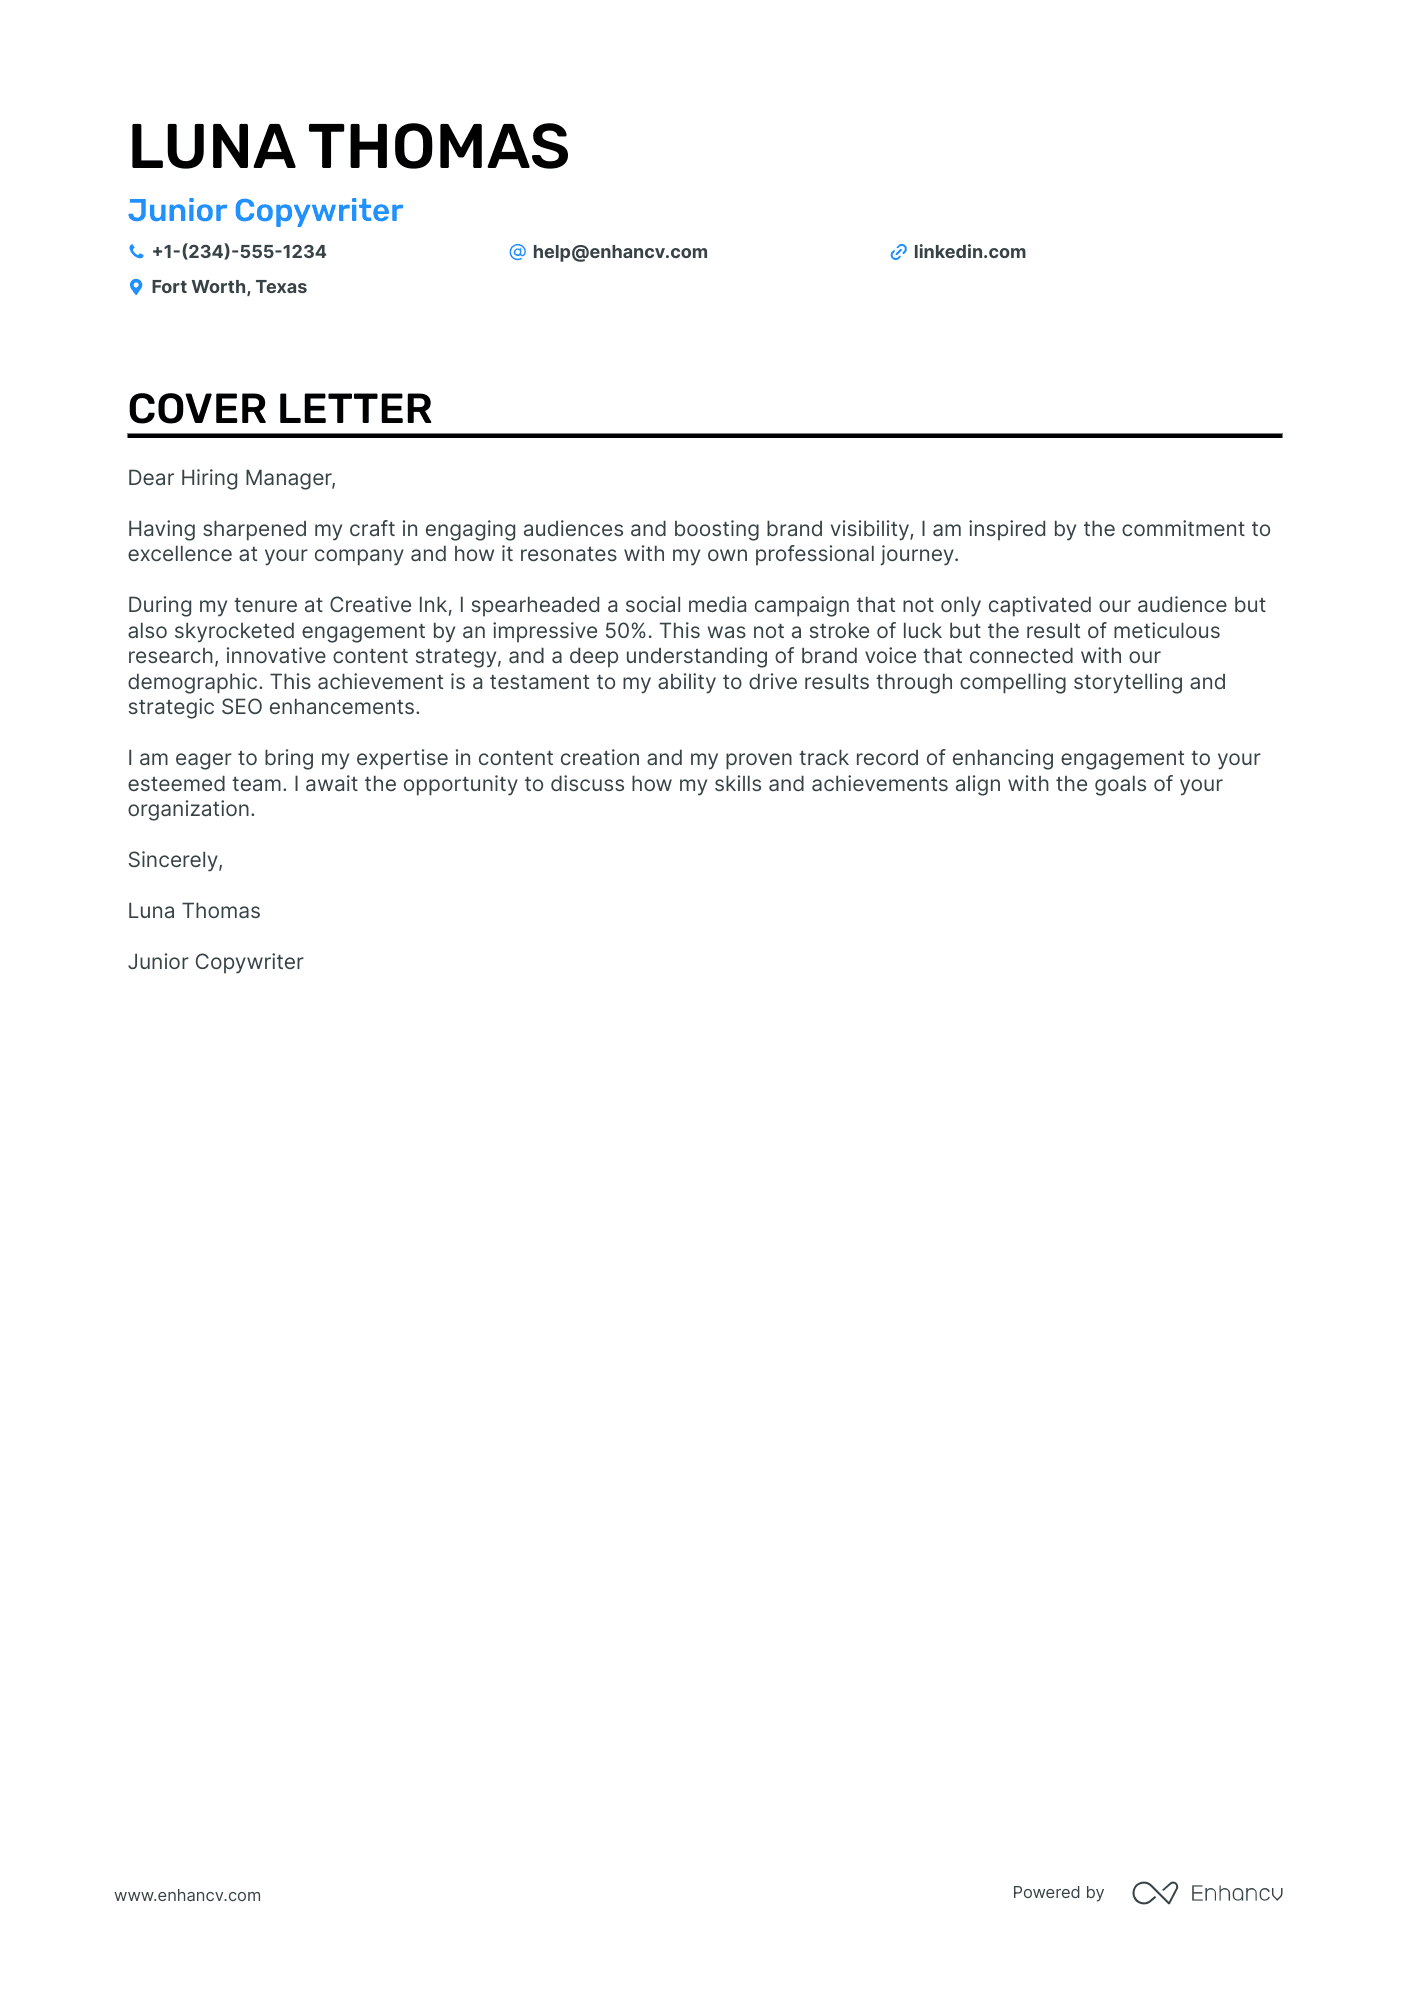 Junior Copywriter Resume Example